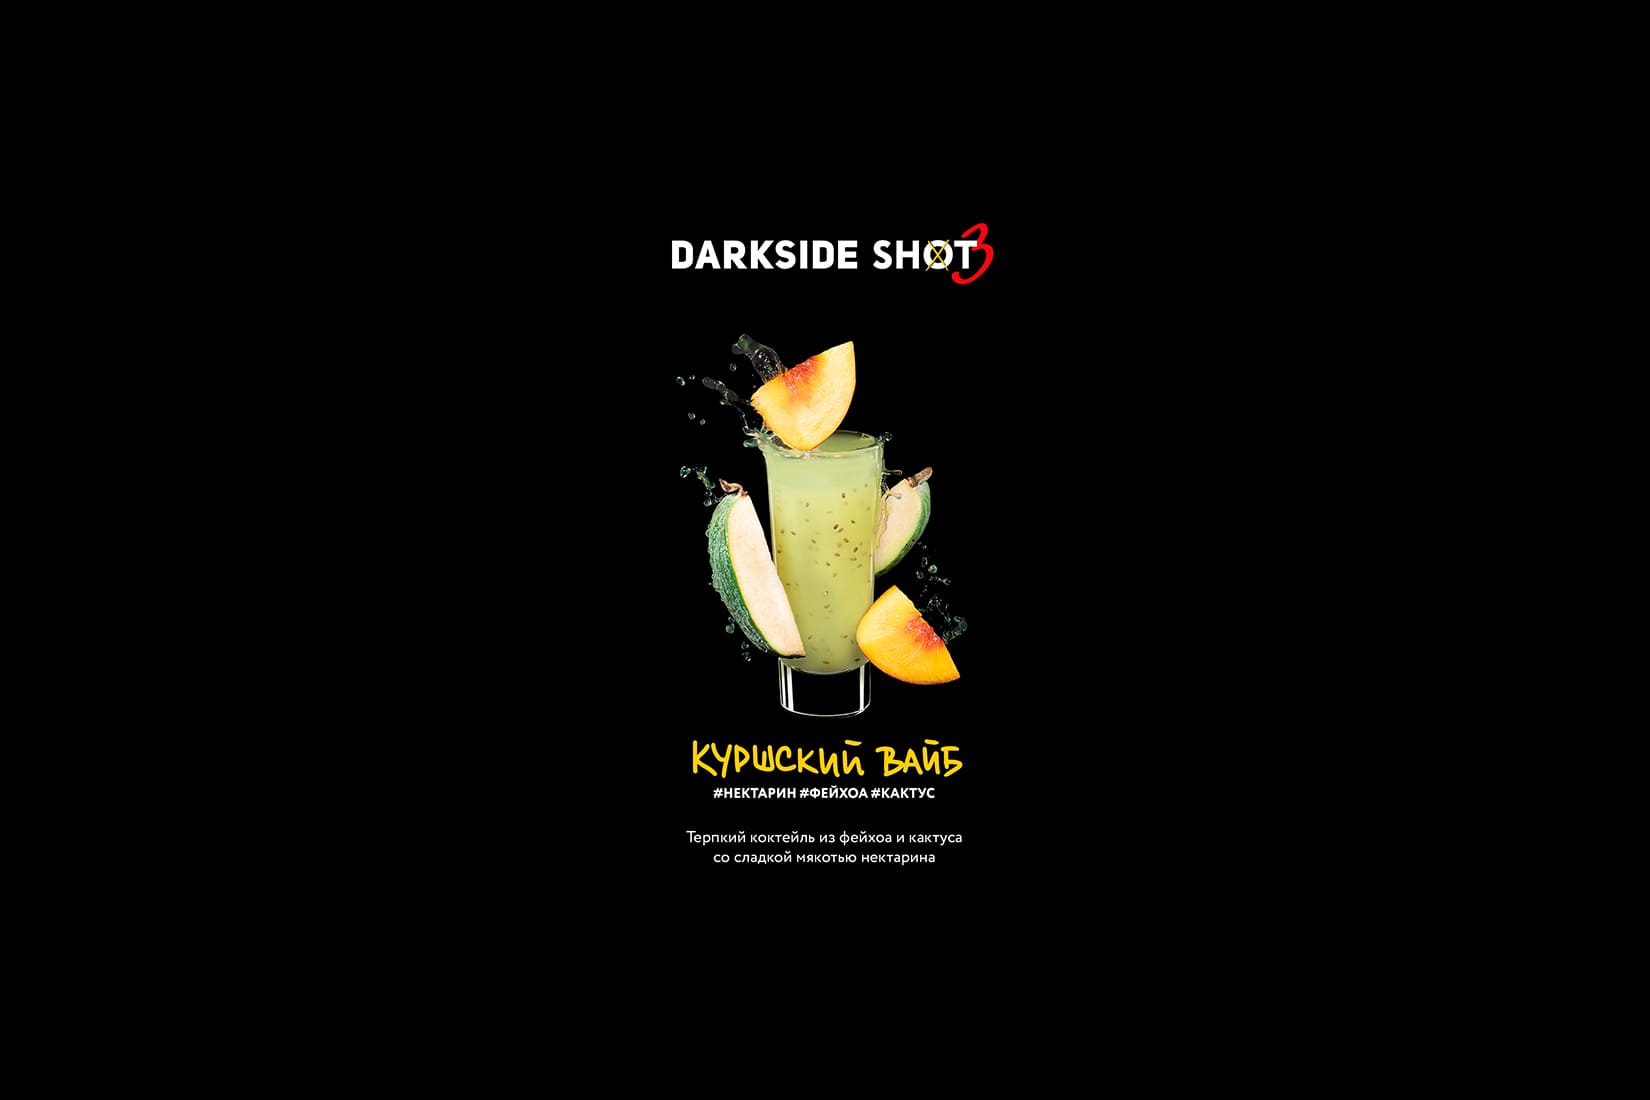 Табак для кальяна DarkSide SHOT Куршский вайб – описание, отзывы